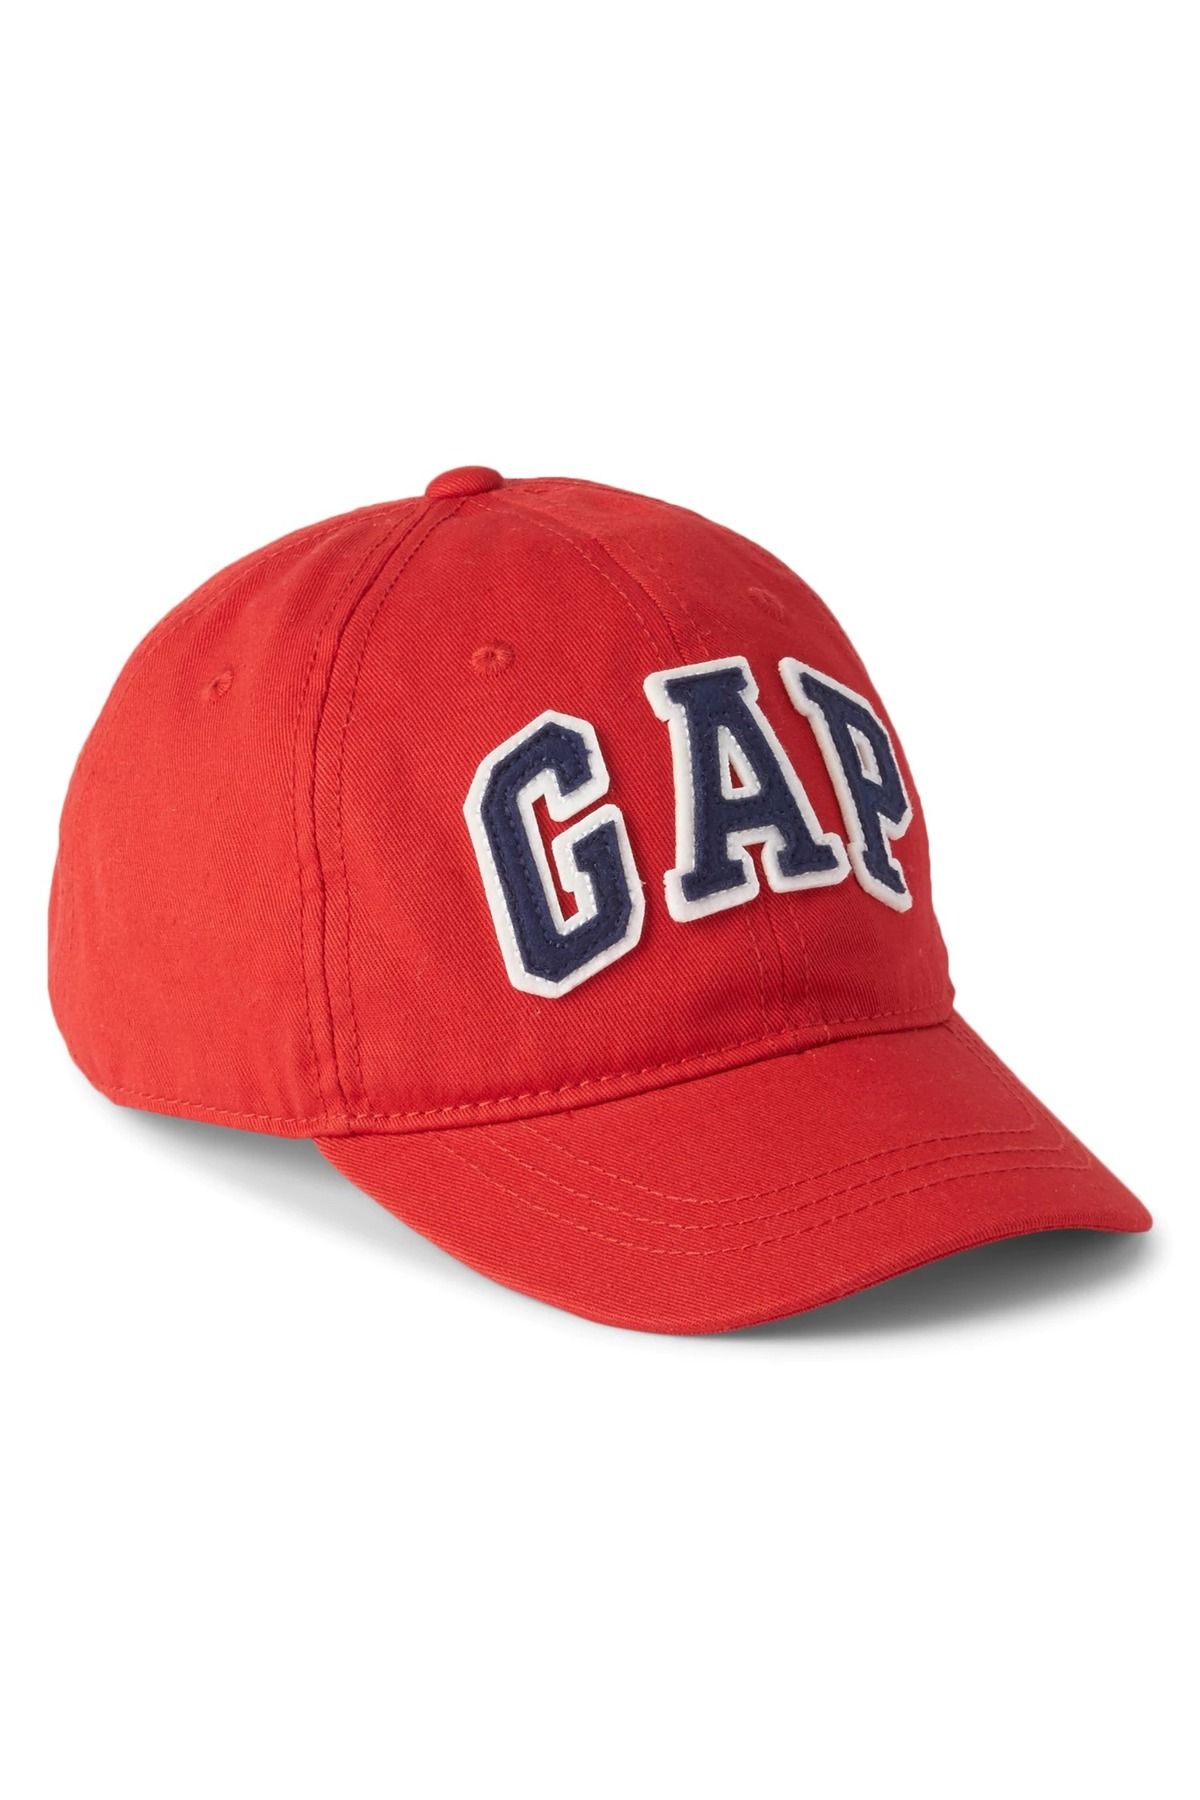 GAP Erkek Çocuk Kırmızı Gap Logo Şapka